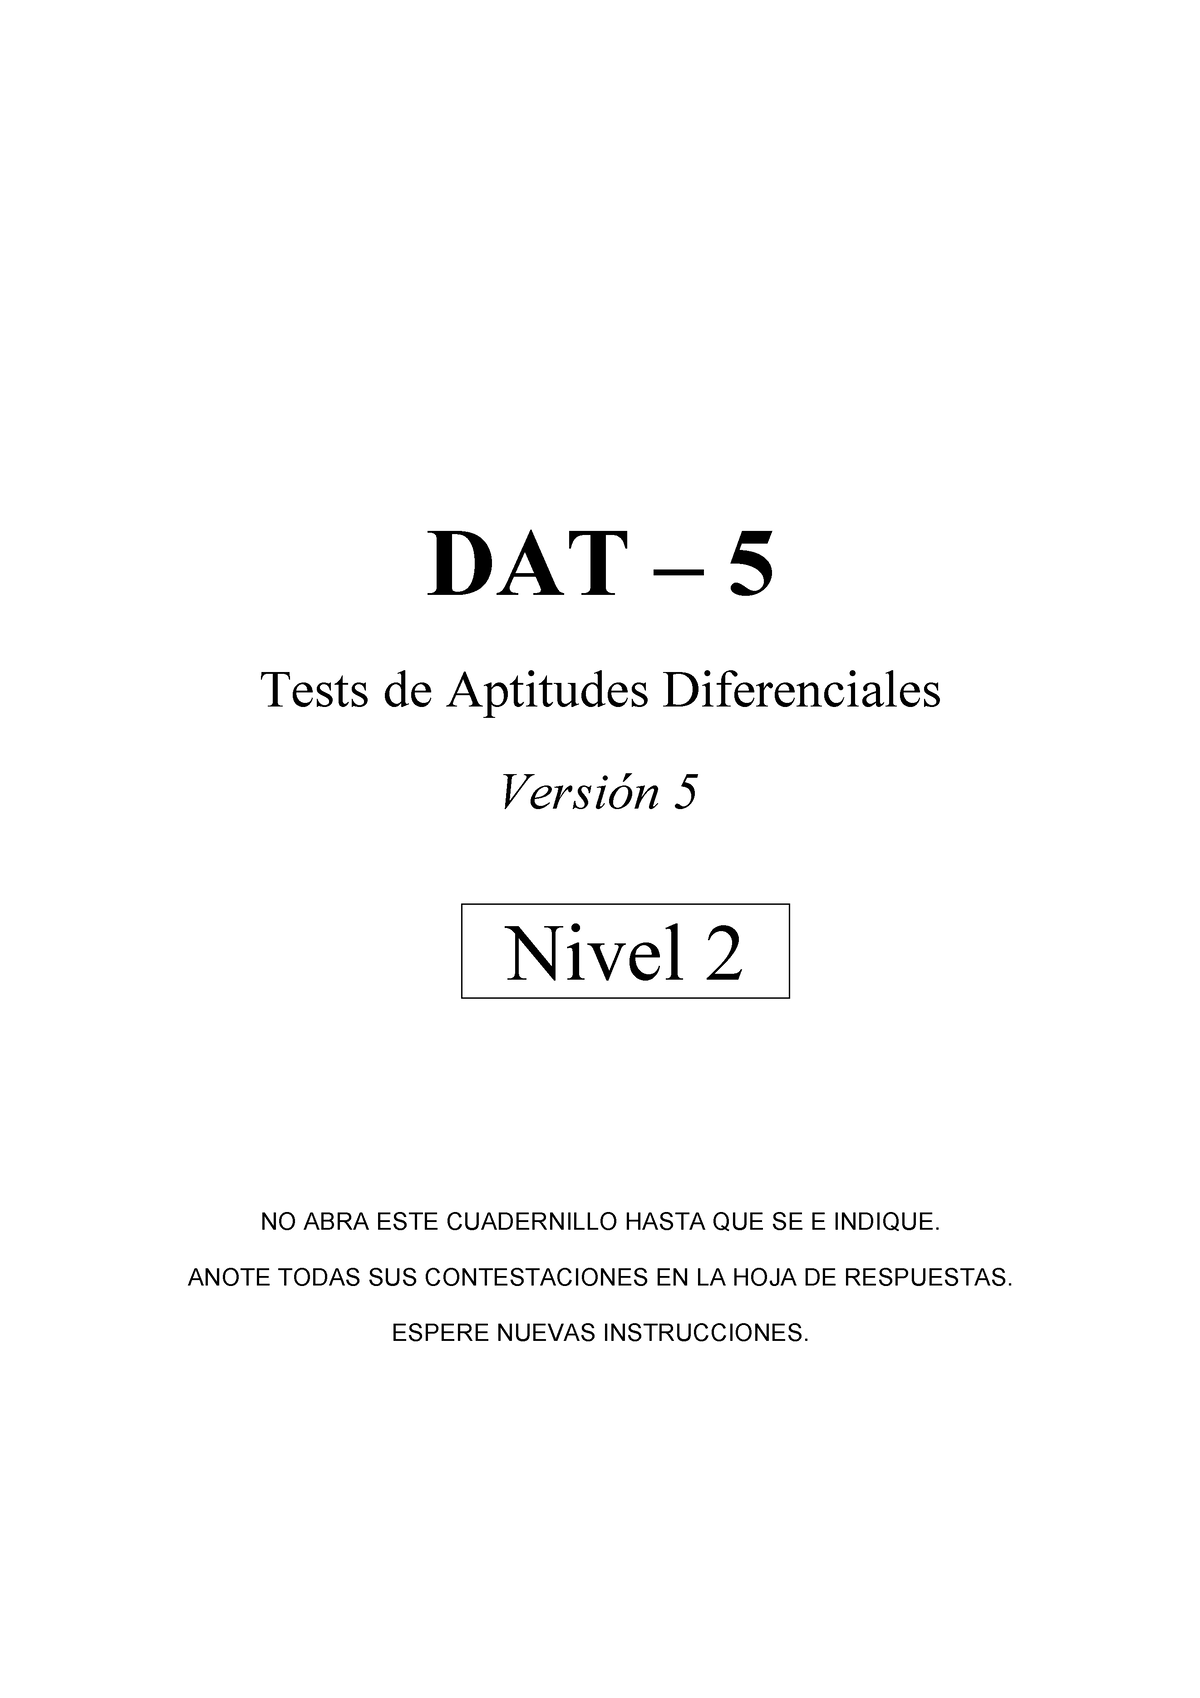 dat-5-cuestionario-dat-5-tests-de-aptitudes-diferenciales-versi-n-5-nivel-2-no-abra-este